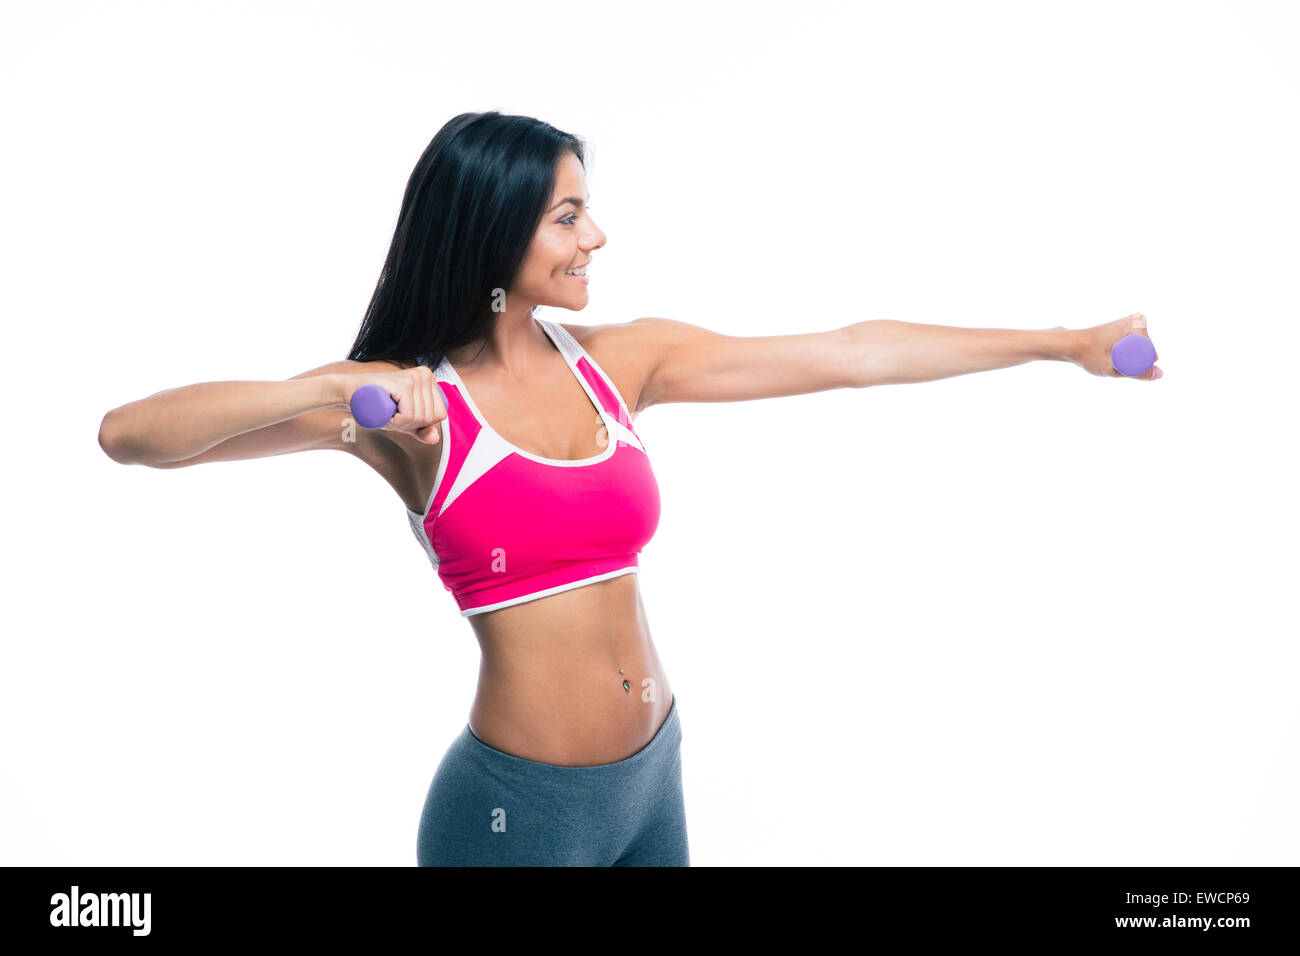 Felice donna fitness allenamento con i pesi isolato su uno sfondo bianco Foto Stock